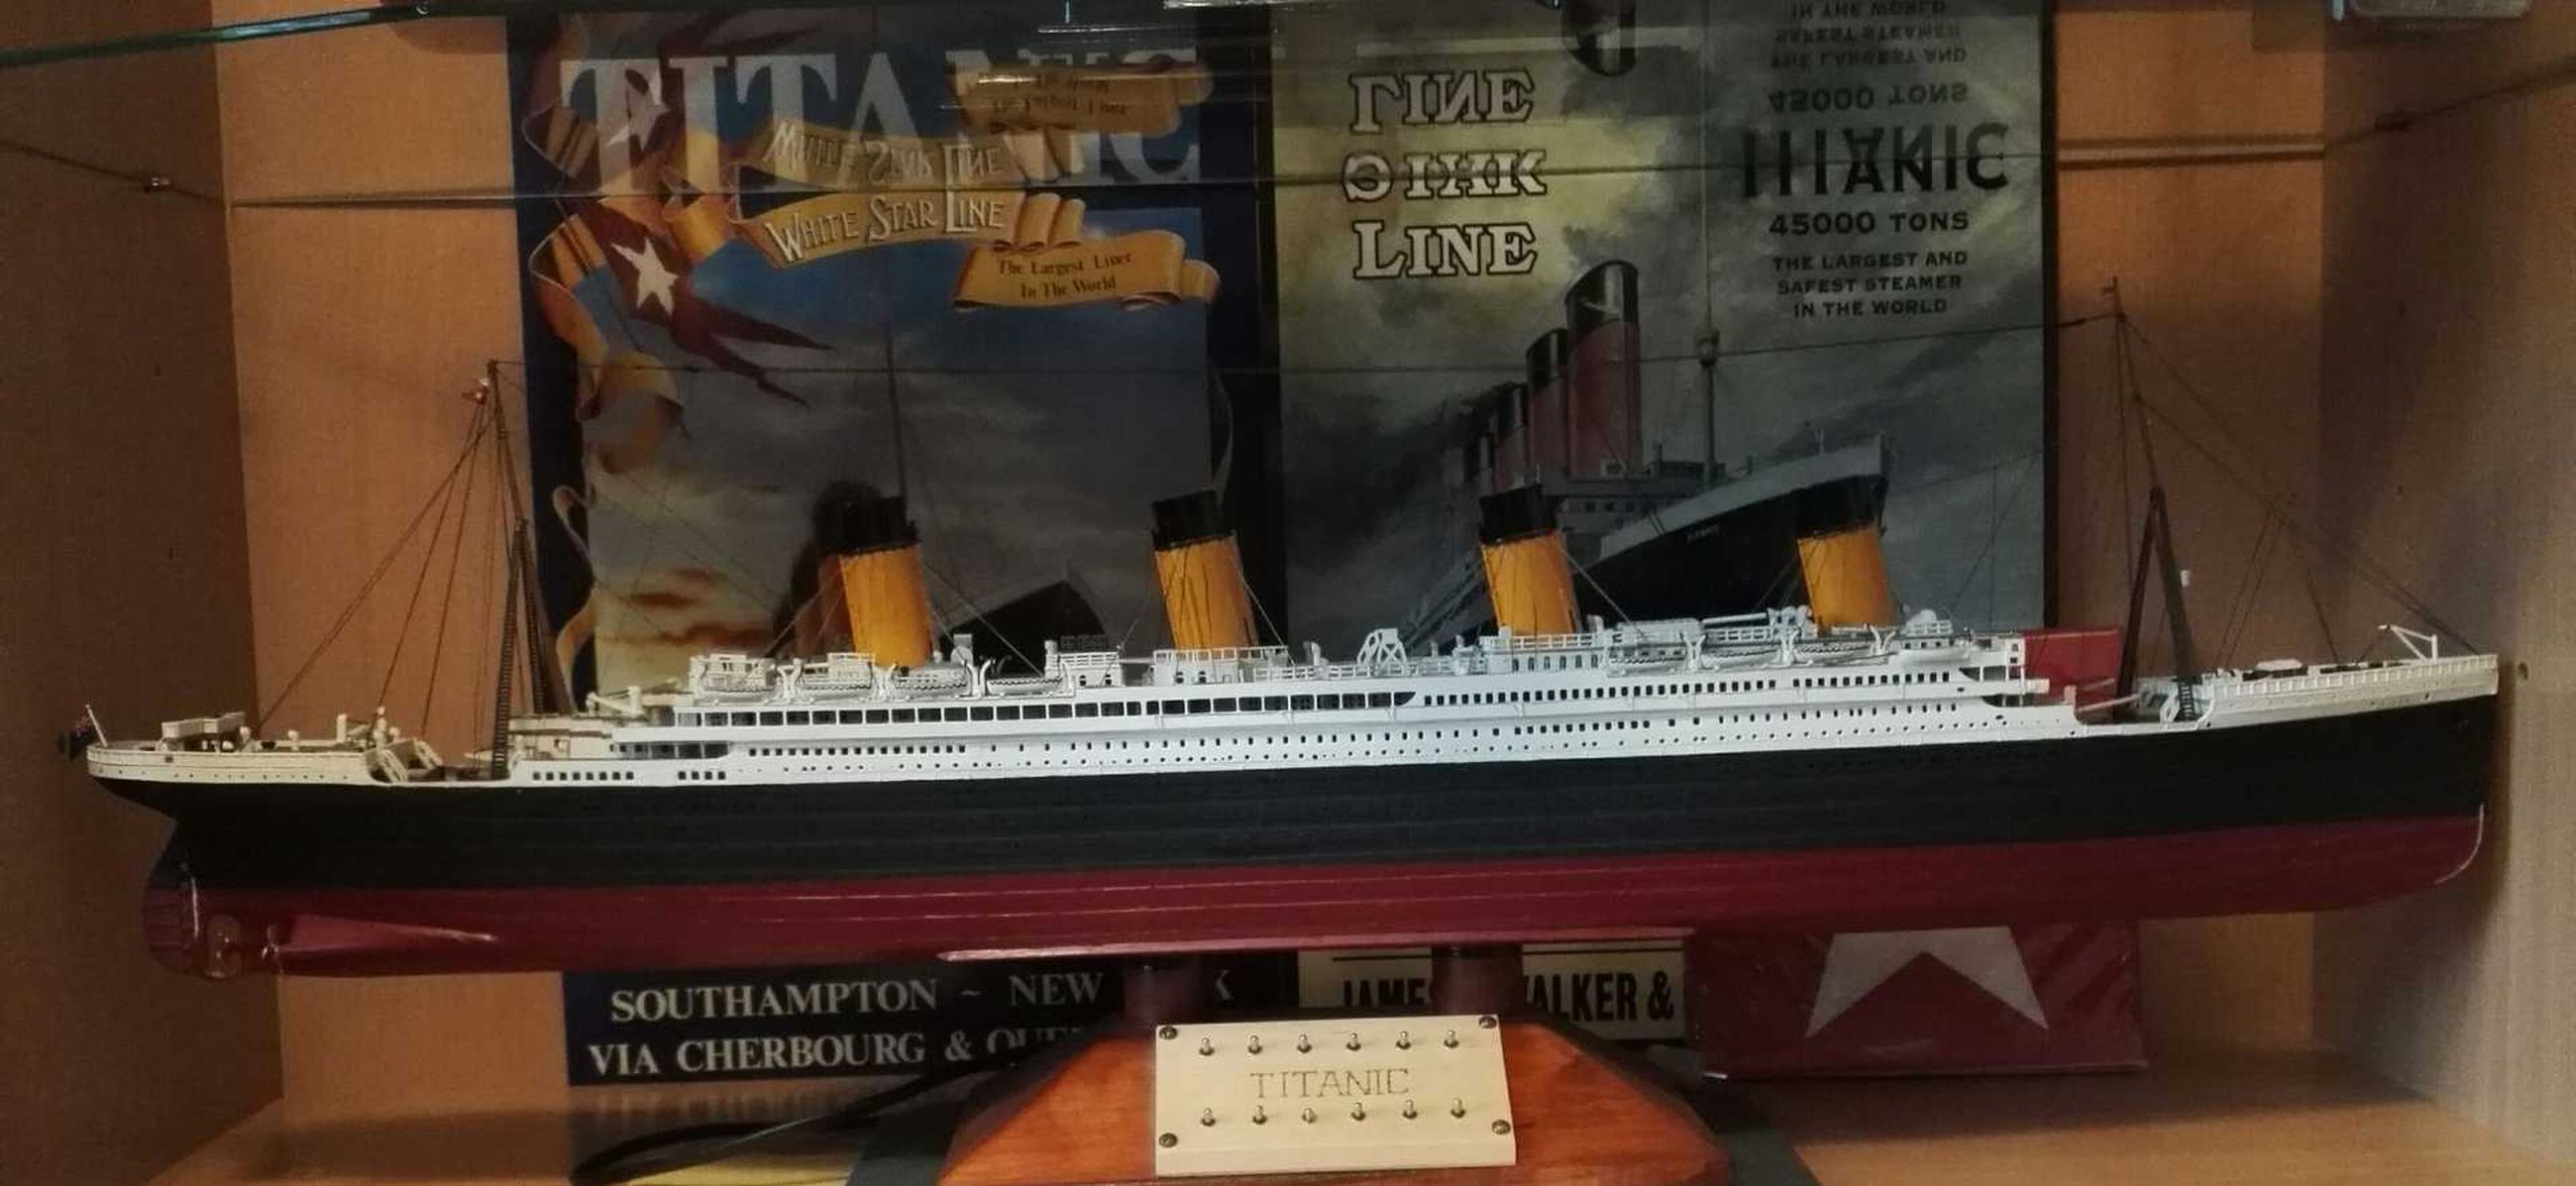 Titanic lipuu Raahen pääkirjaston vitriineihin – esillä harvinaista  materiaalia | Raahen Seutu